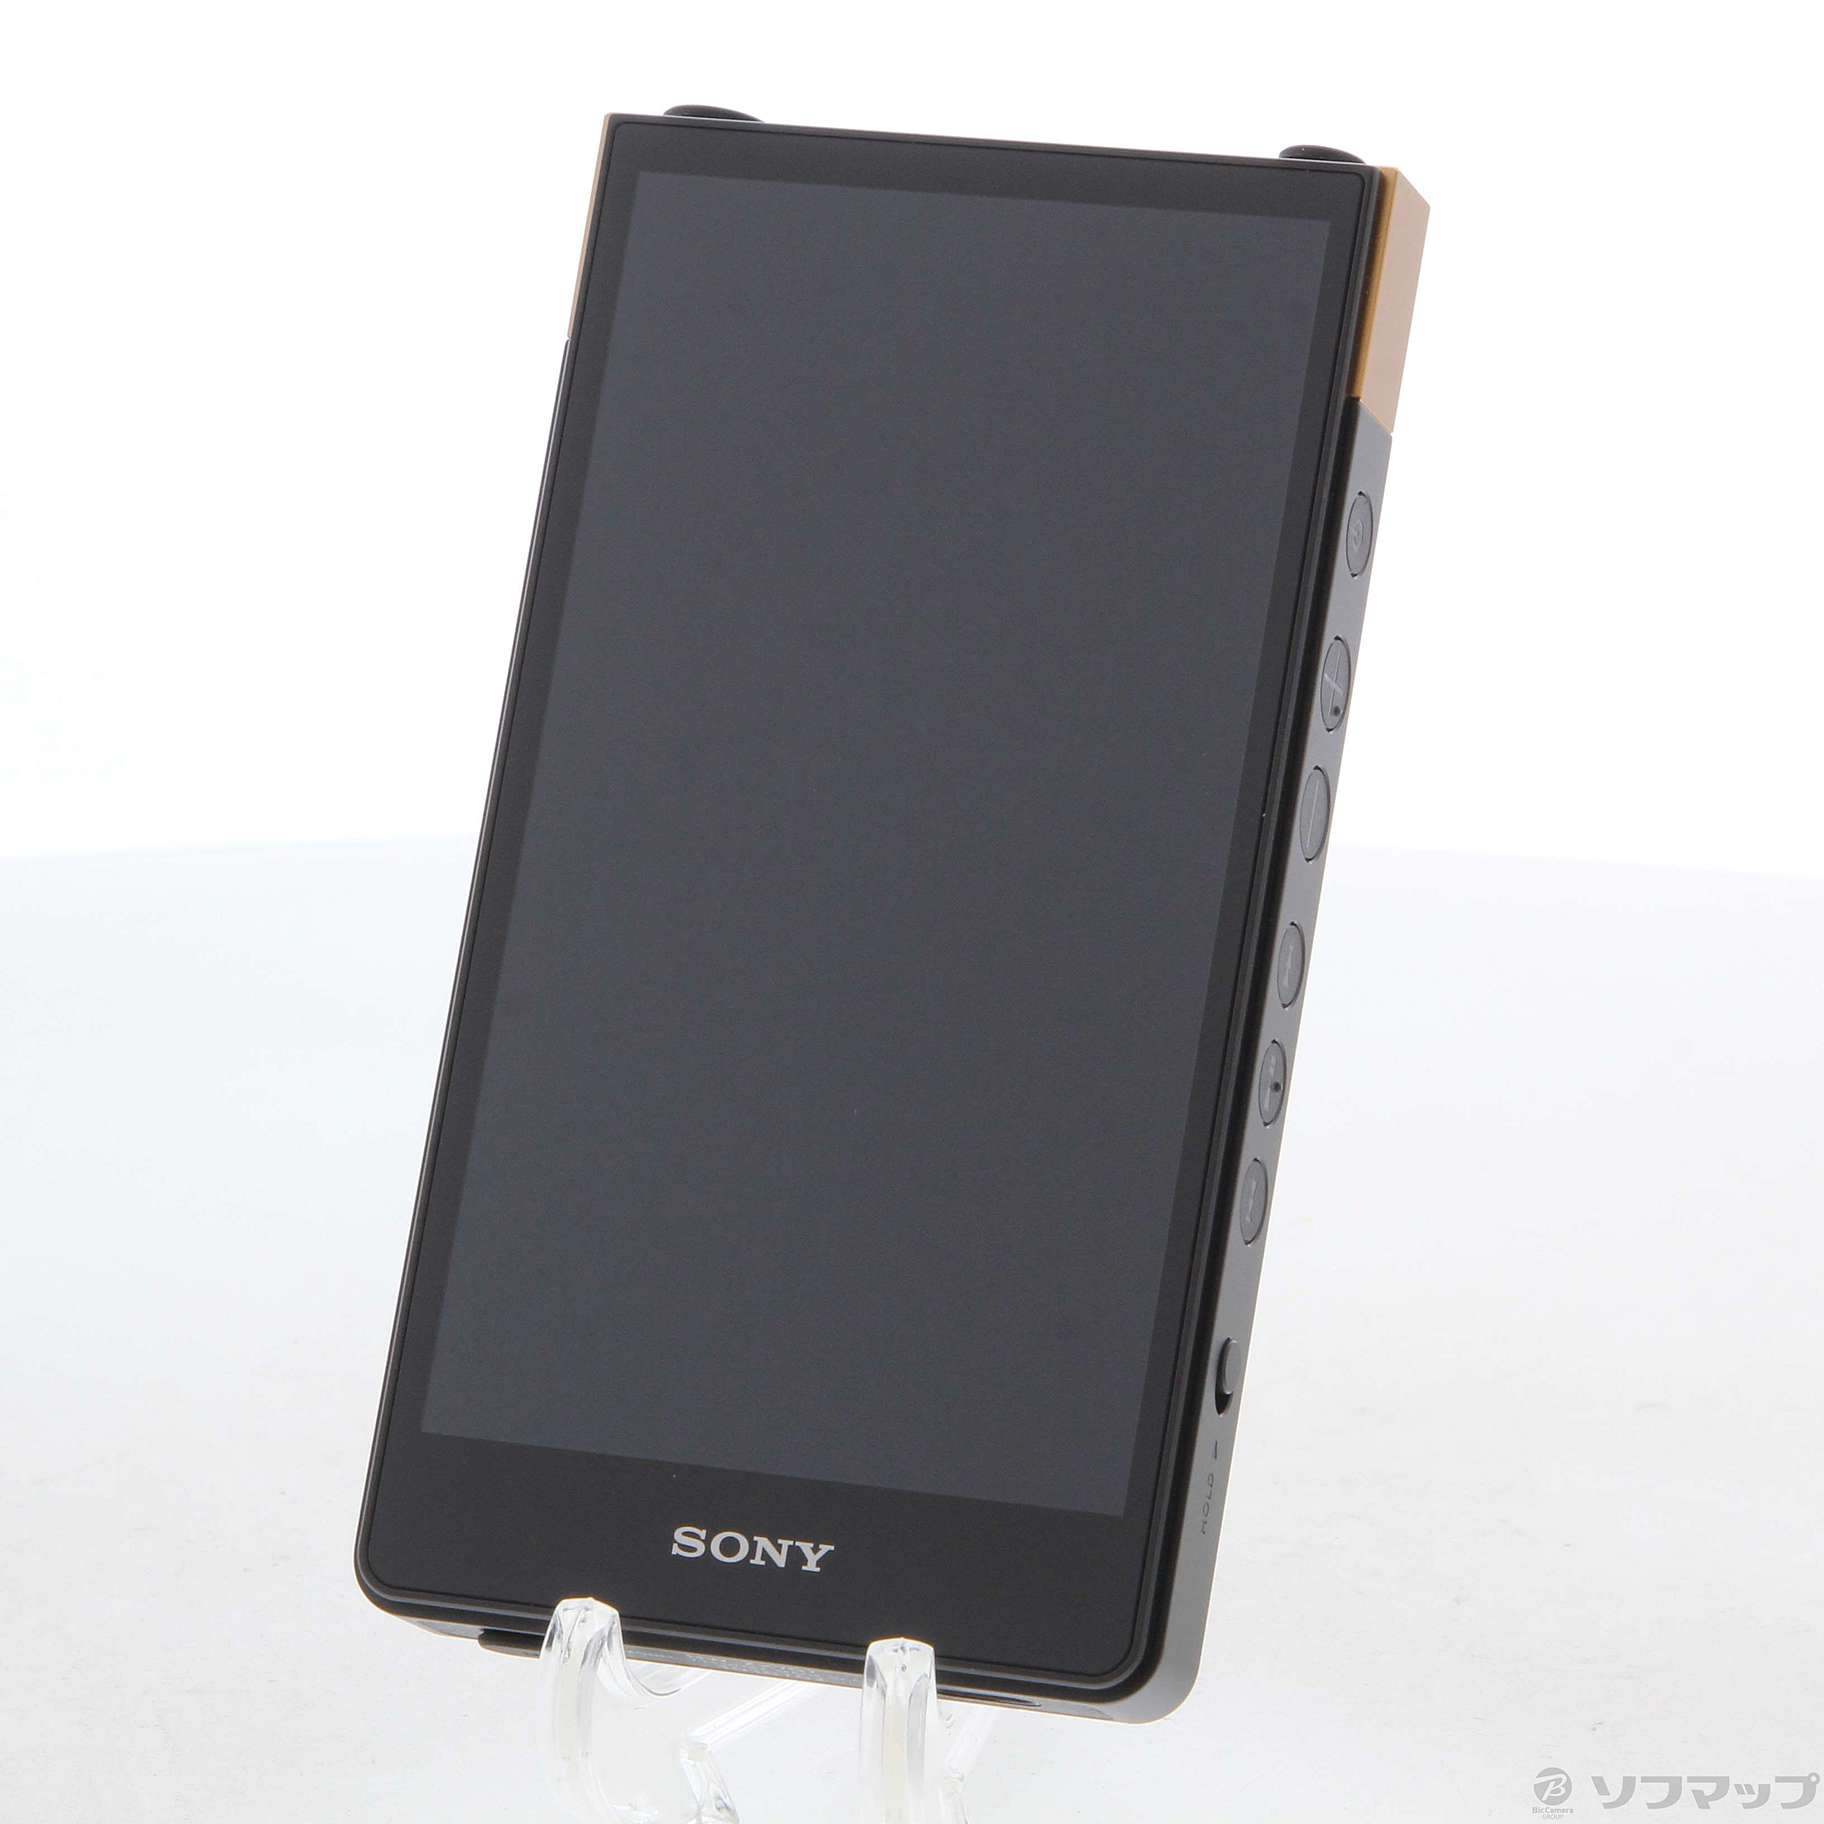 SONY WALKMAN NW-ZX707 64GB ブラック 新品未使用 - www.sorbillomenu.com